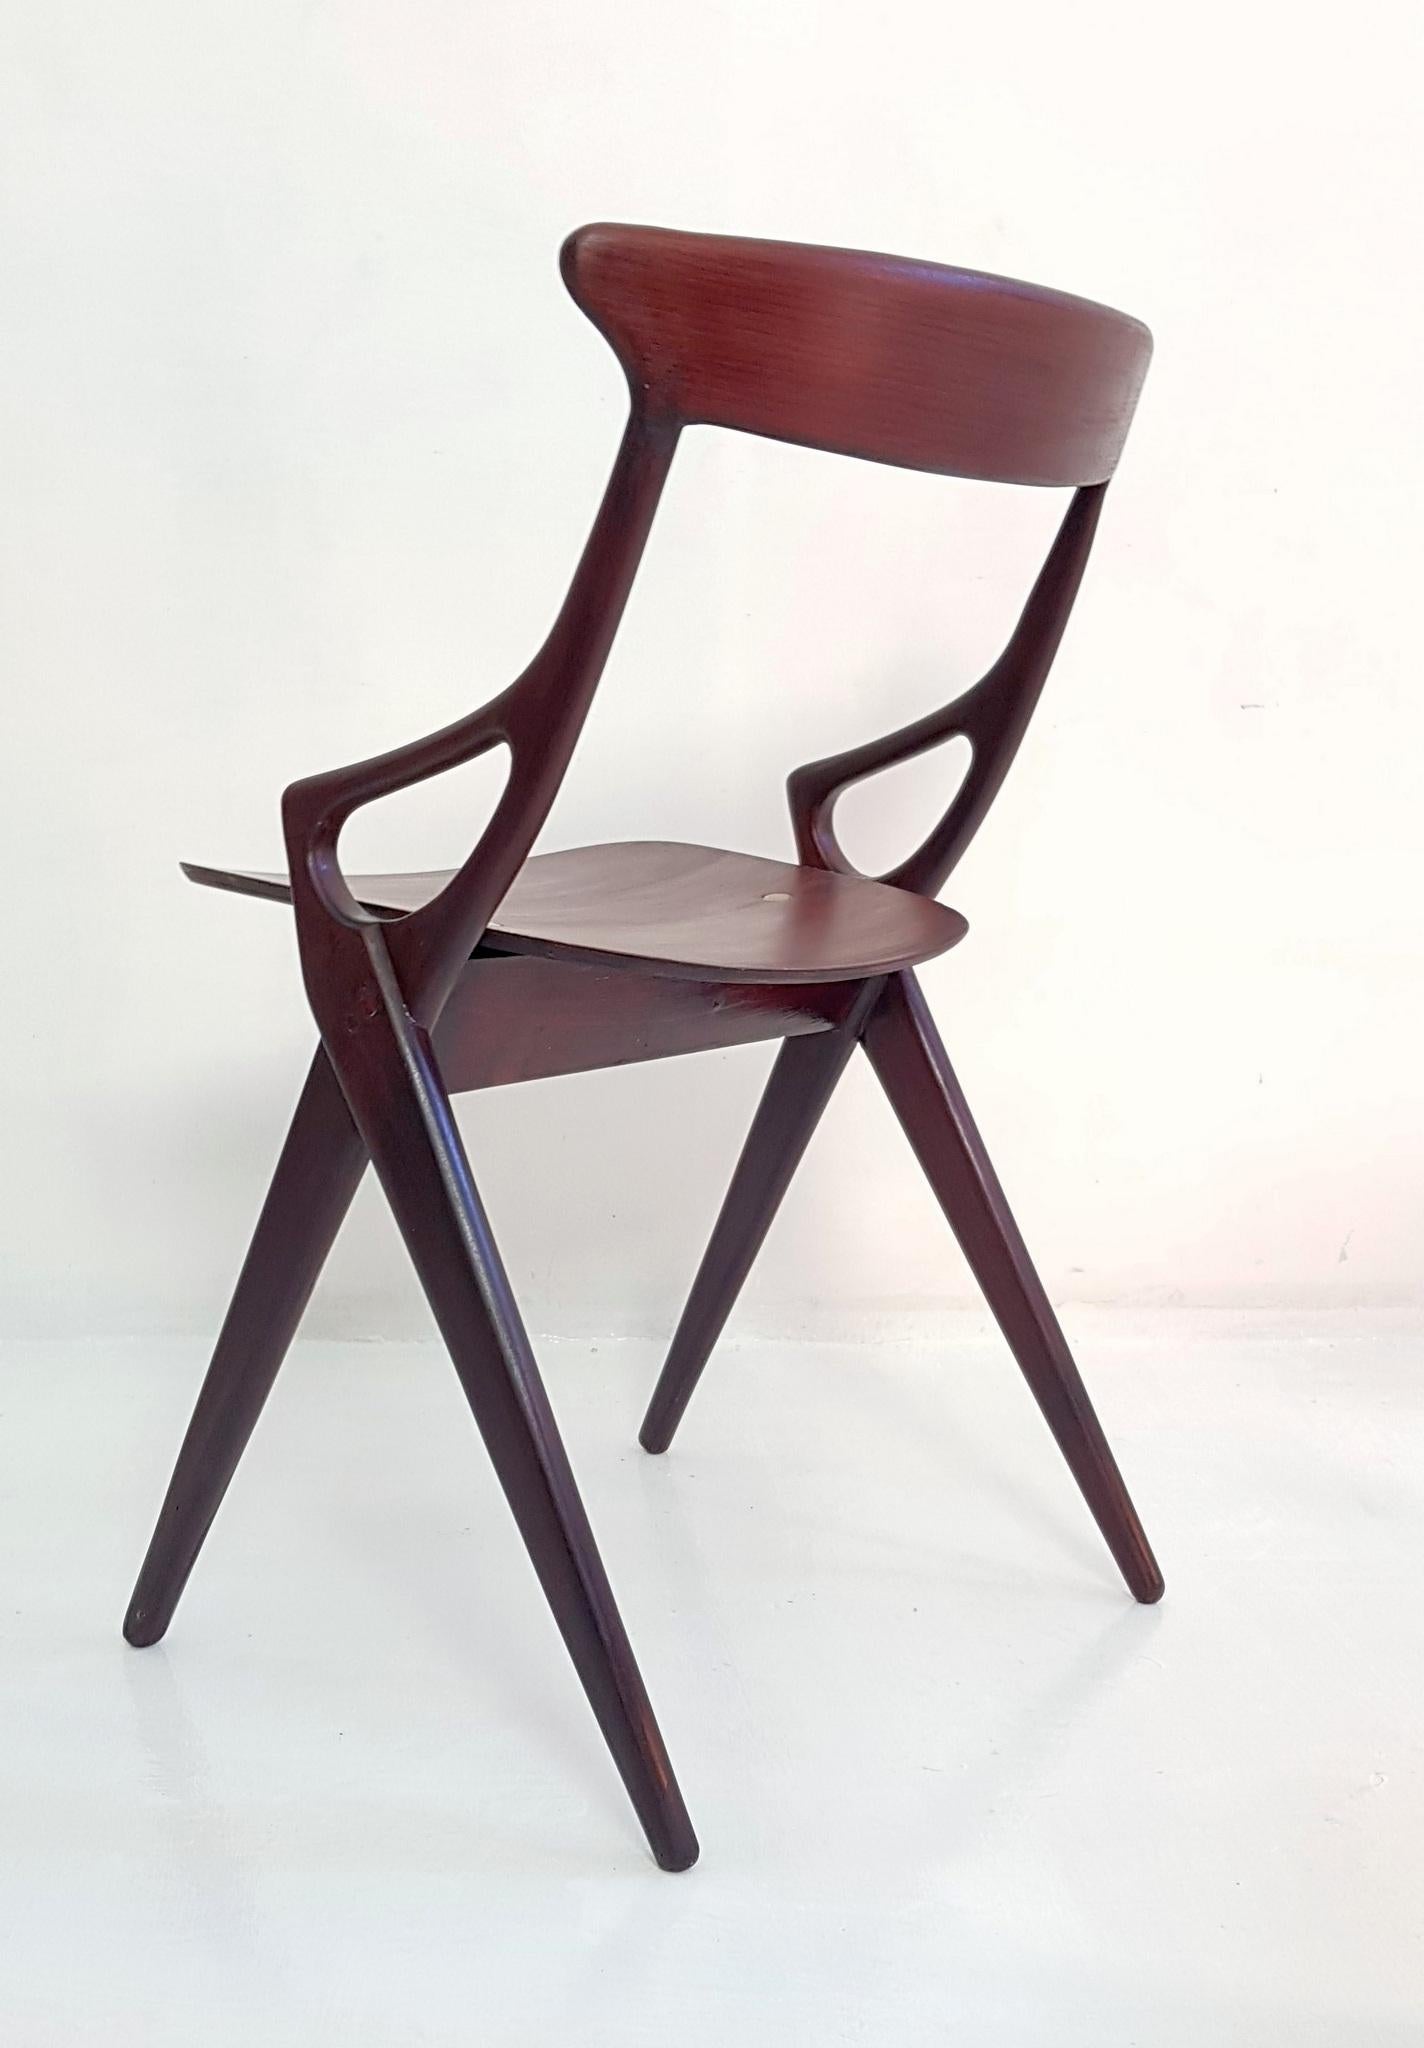 Set of 4 Dining Chairs by Arne Hovmand Olsen for Mogens Kold, Denmark, 1959 For Sale 1